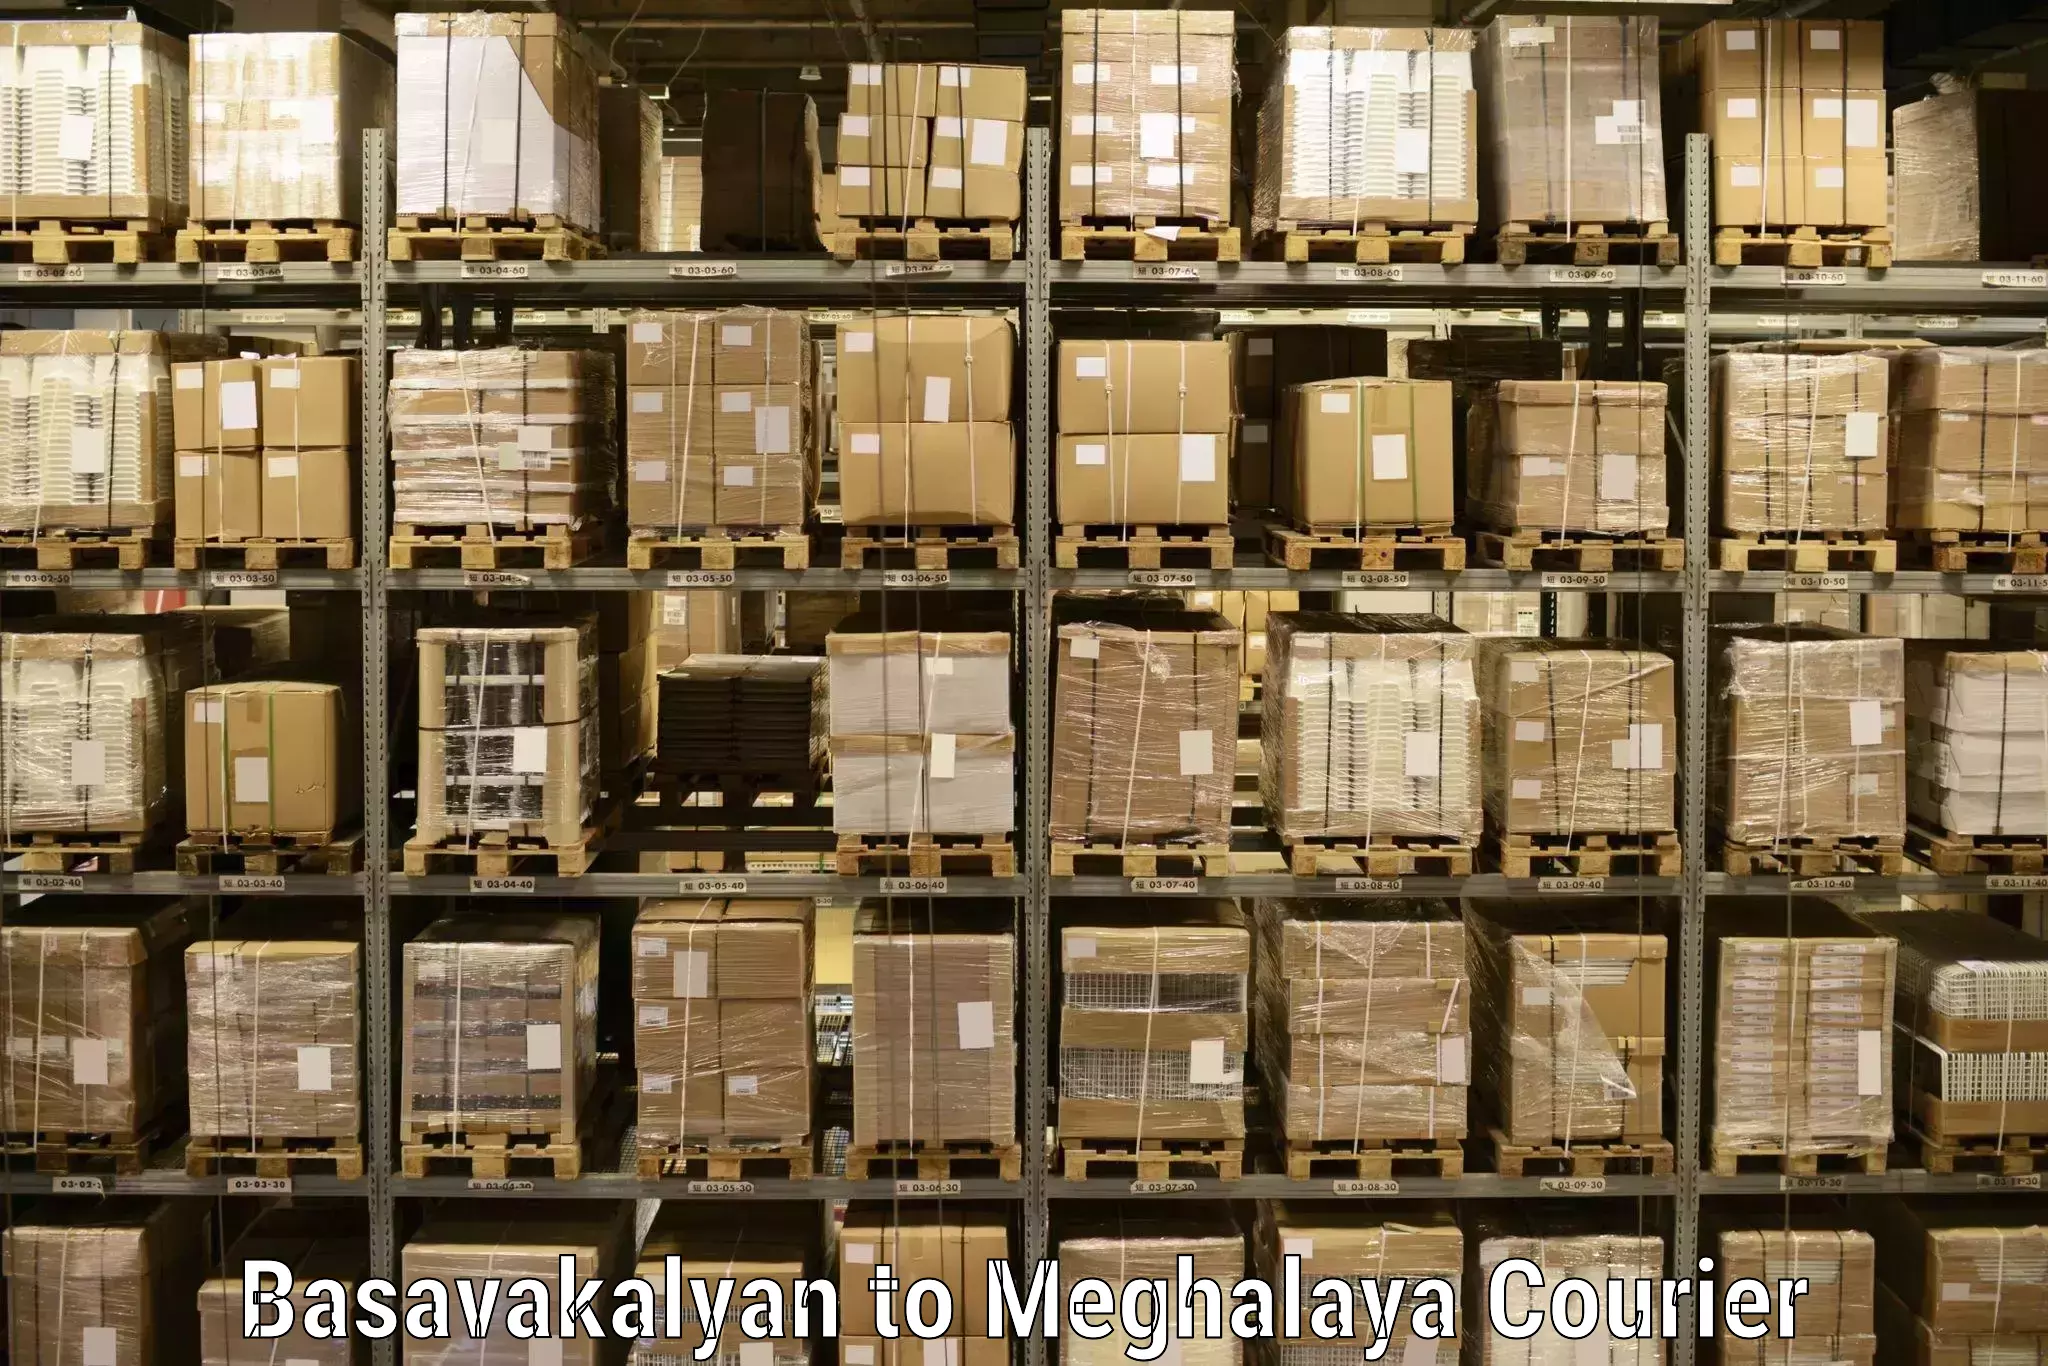 Seamless shipping service Basavakalyan to Tura